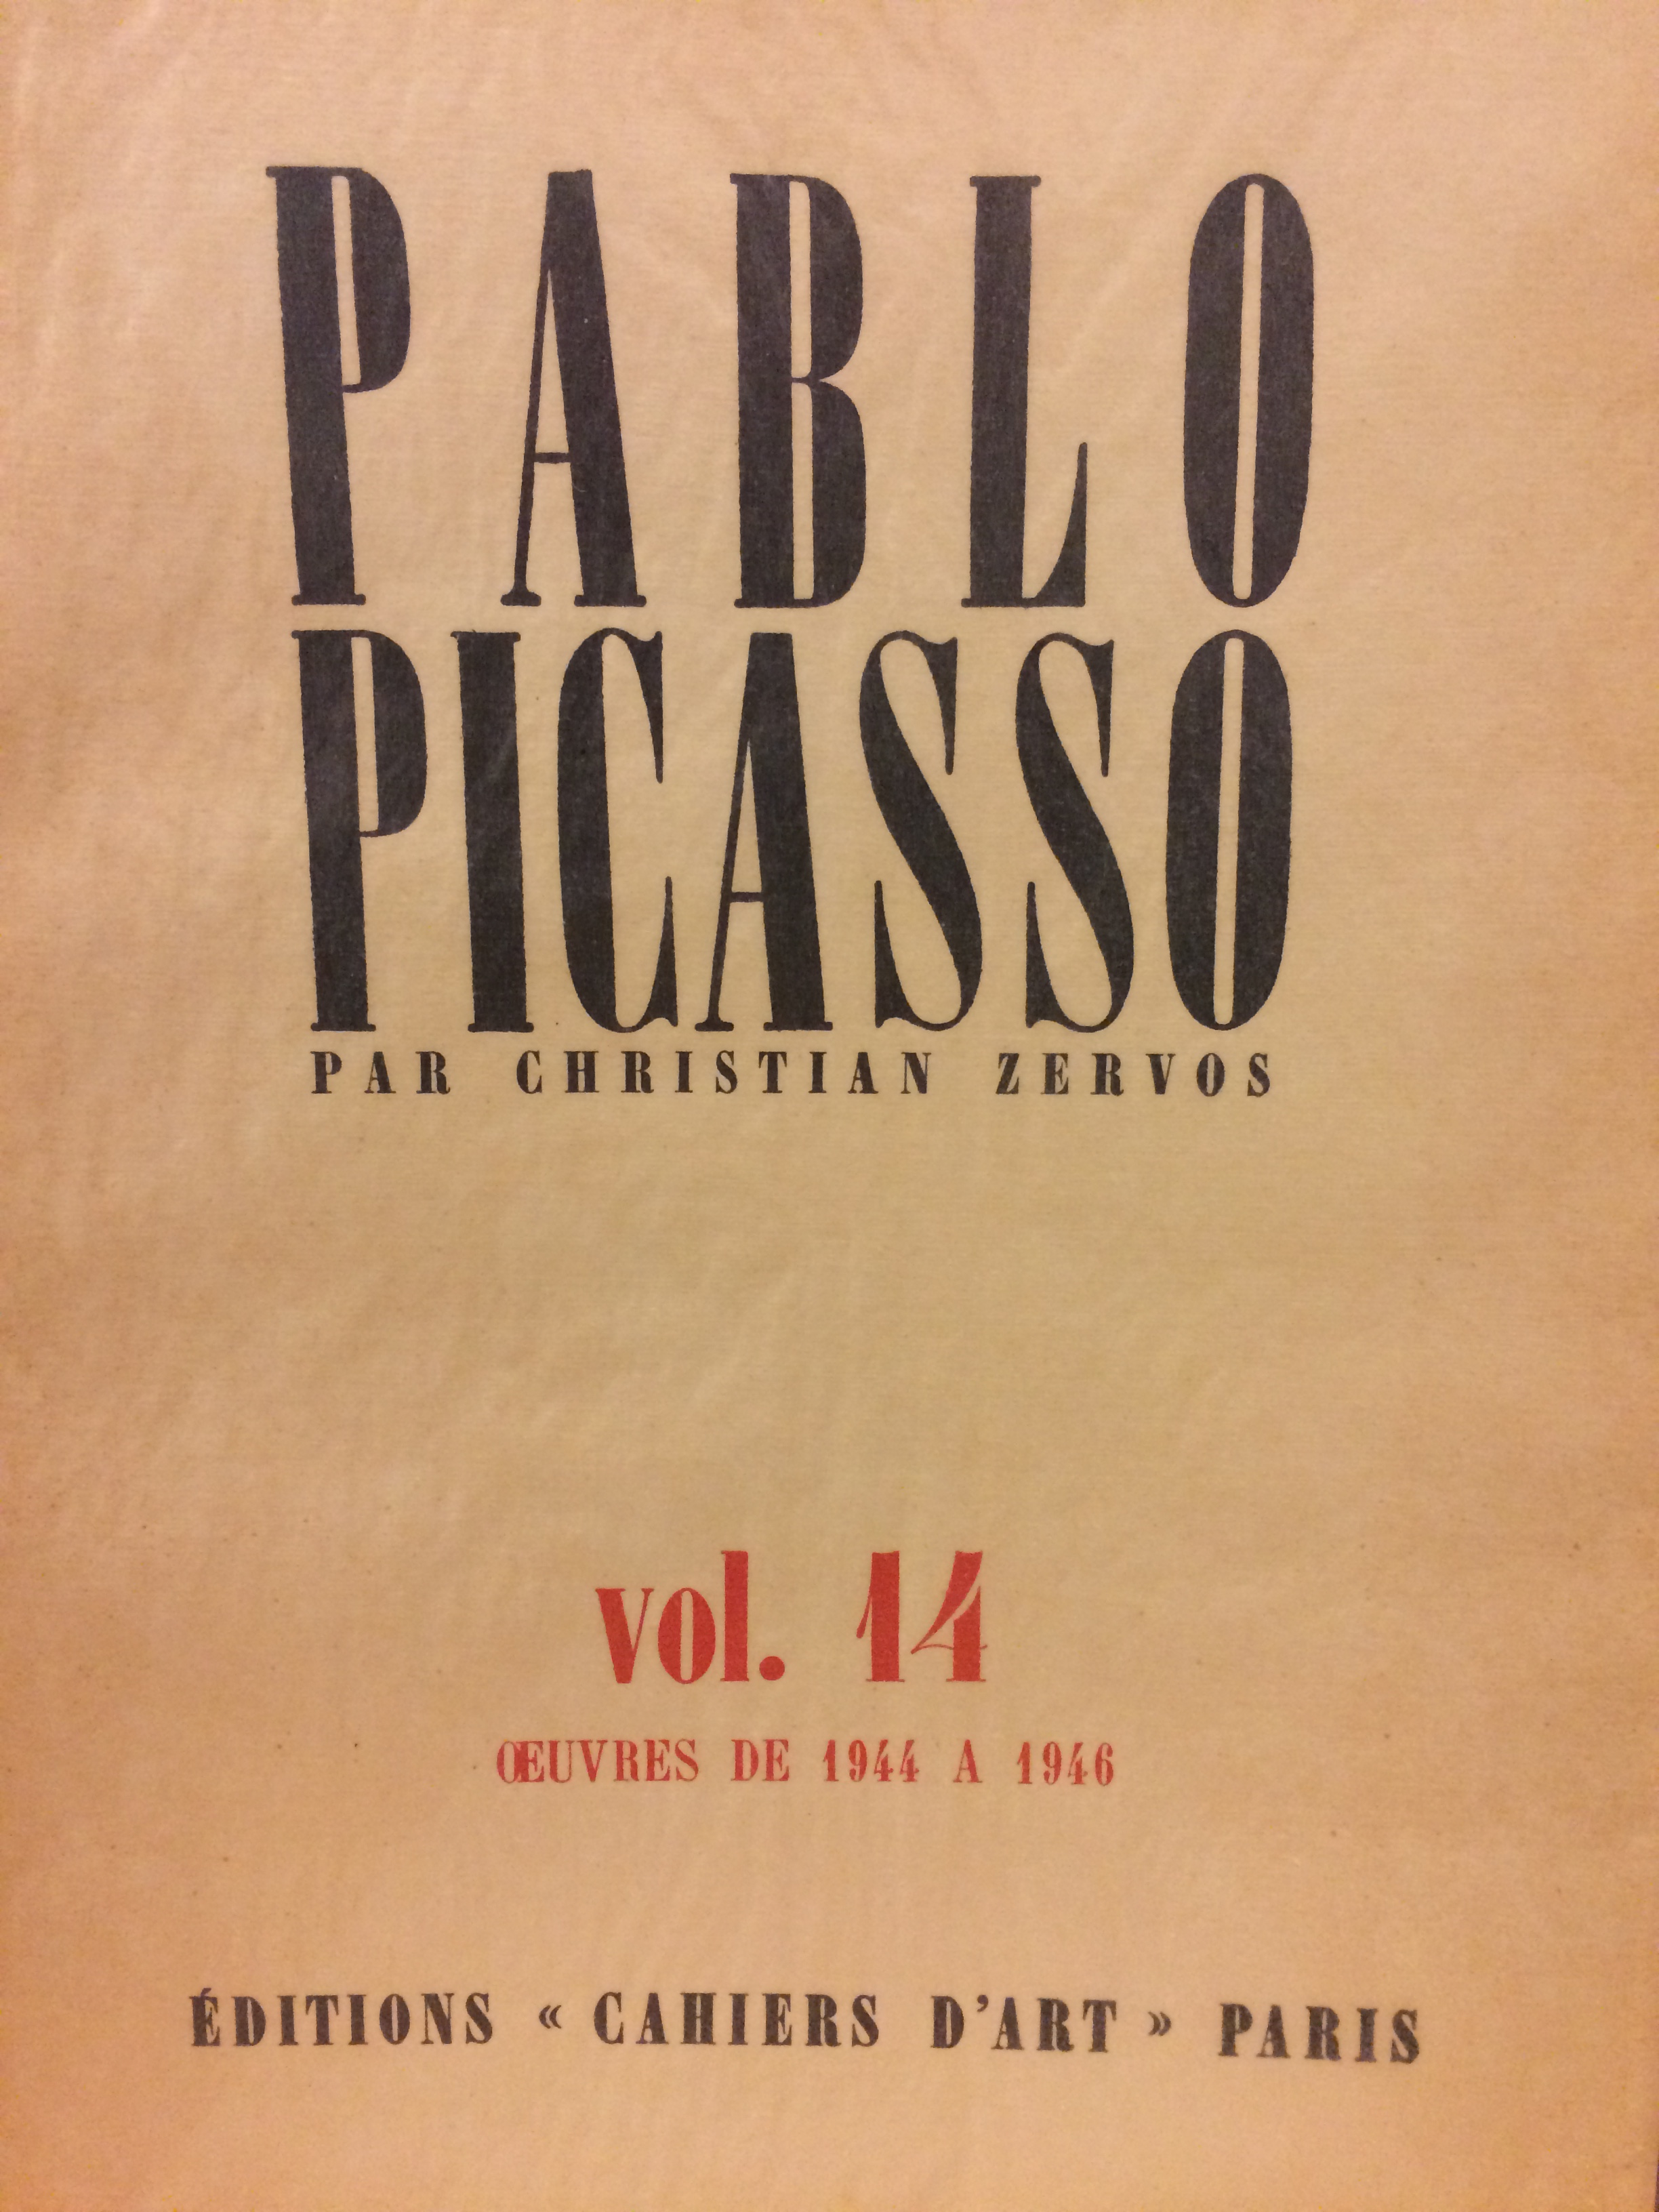 (PICASSO, PABLO). Zervos, Christian - PABLO PICASSO PAR CHRISTIAN ZERVOS VOL. 14 (XIV): OEUVRES DE 1944 A 1946